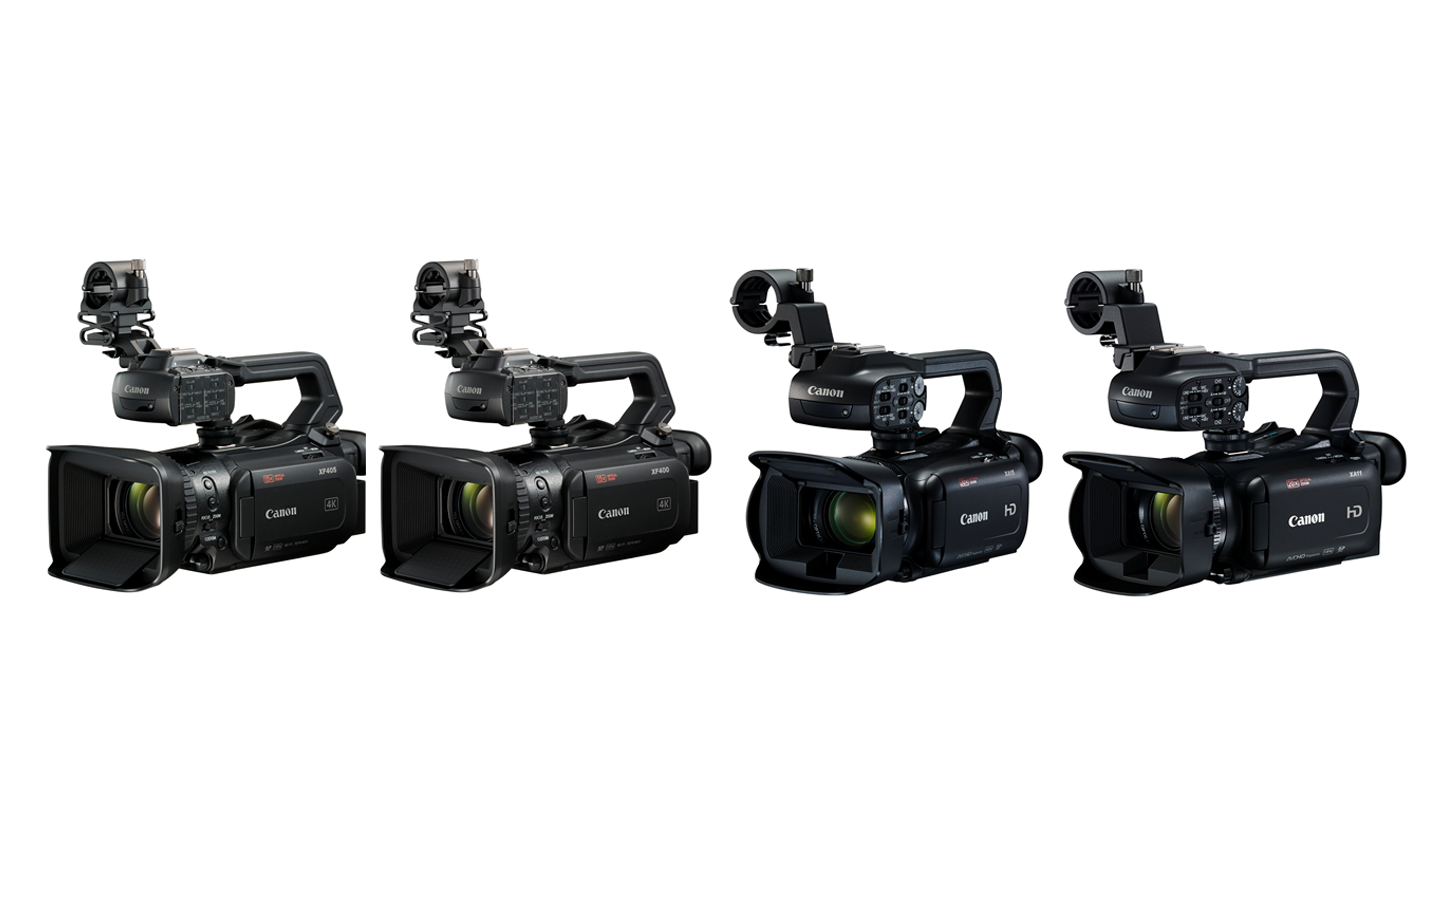  Canon anunţă lansarea de noi produse și 4 camere video pro